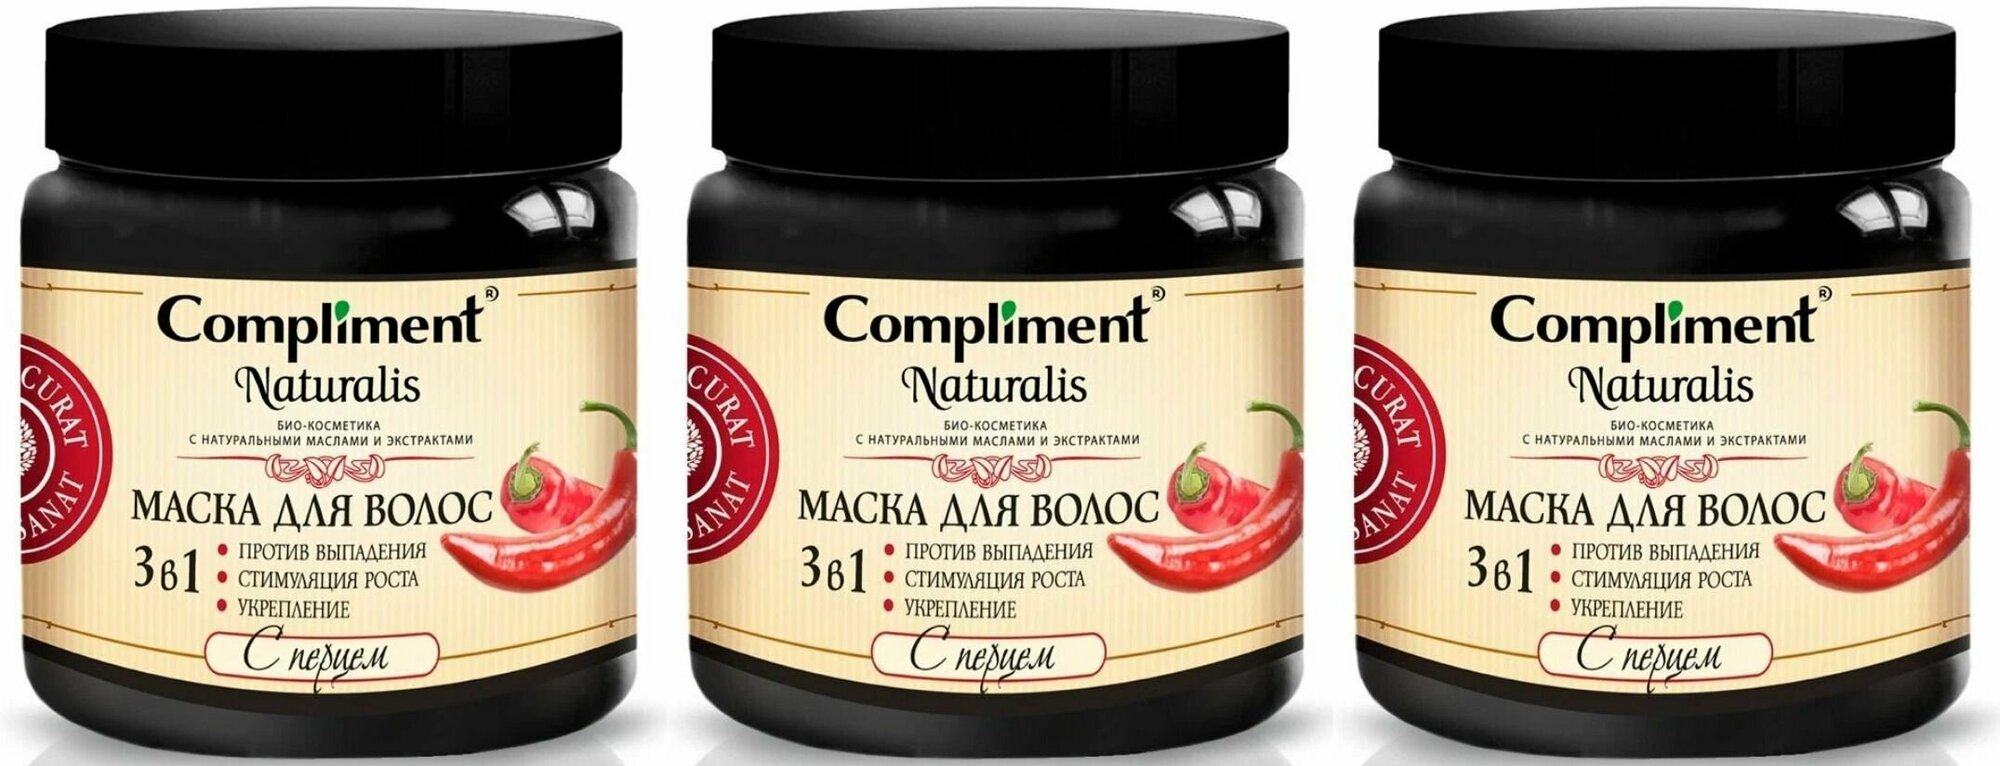 Compliment Маска для волос Naturalis 3 в 1 с перцем, против выпадения, стимуляция роста и укрепление, 500 мл, 3 штуки